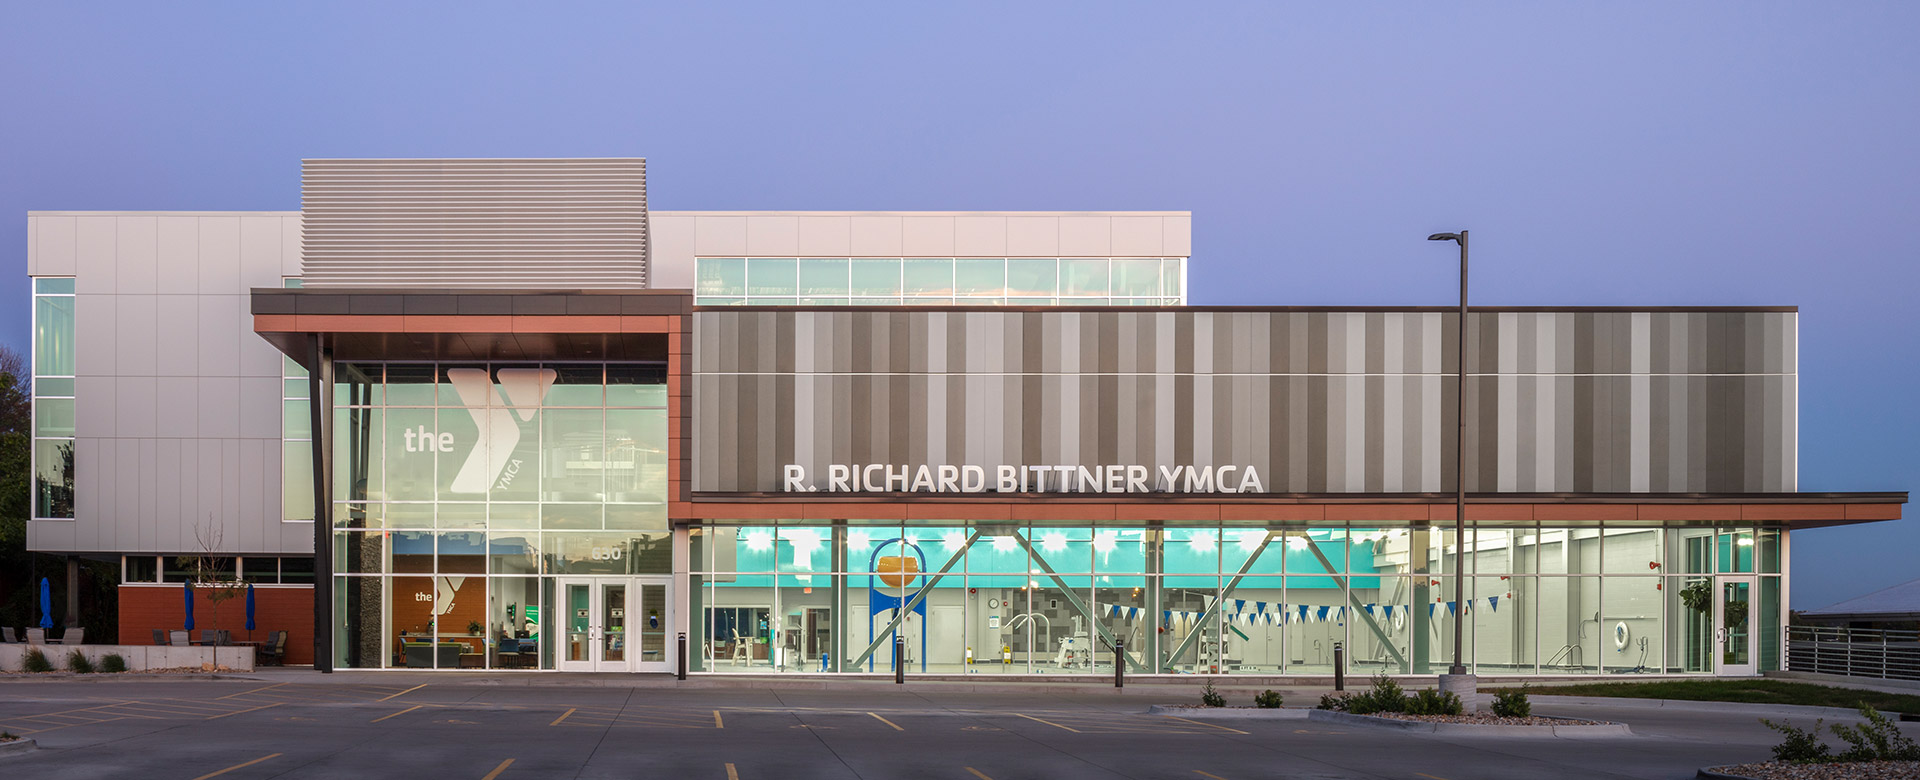 Richard Bittner YMCA